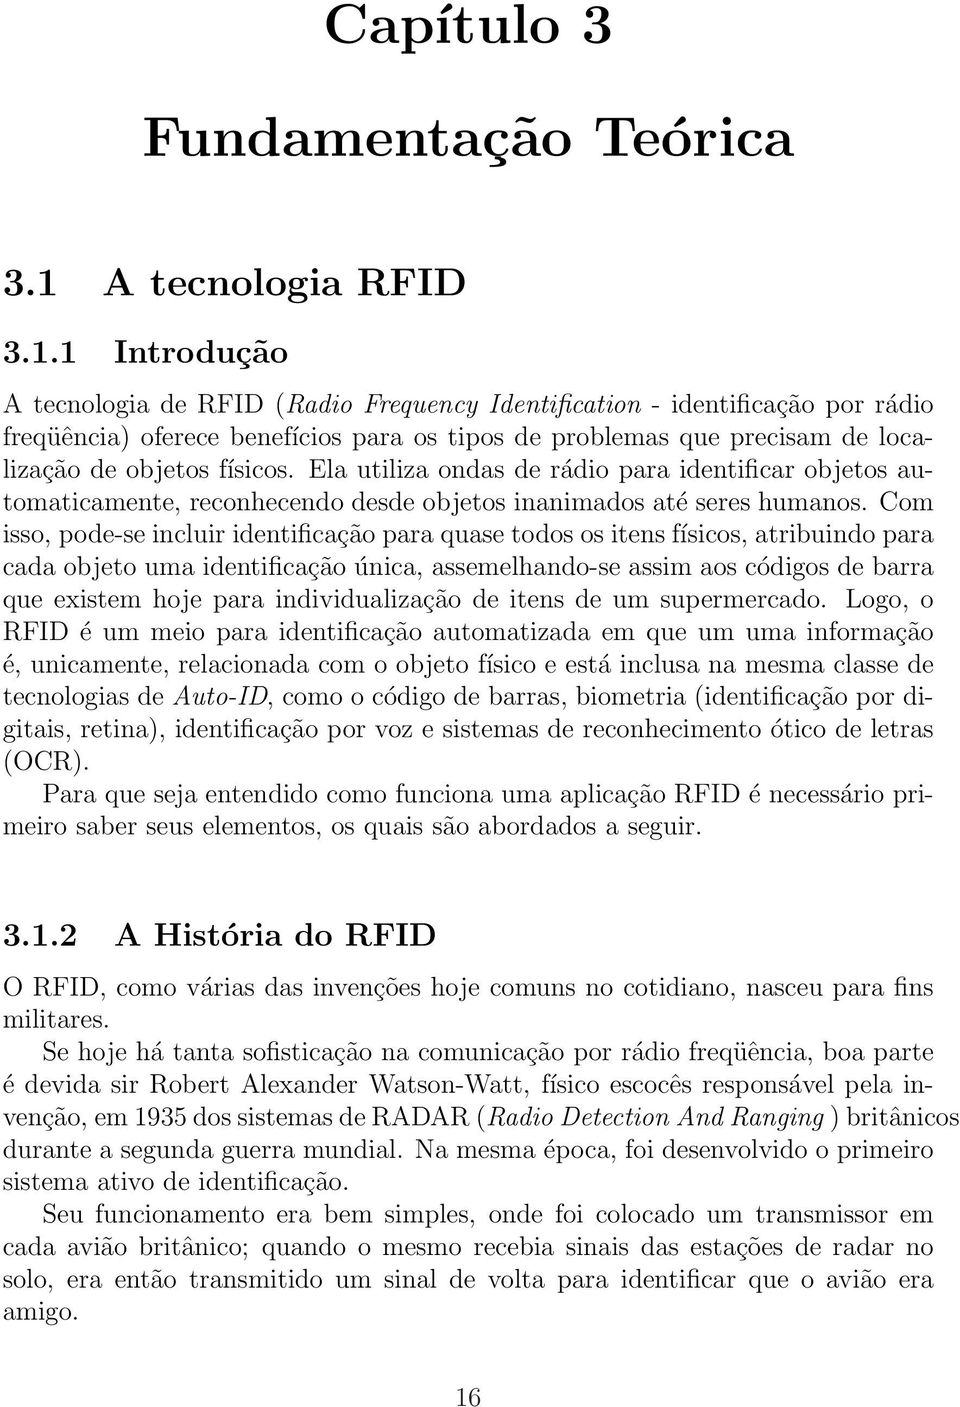 1 Introdução A tecnologia de RFID (Radio Frequency Identification - identificação por rádio freqüência) oferece benefícios para os tipos de problemas que precisam de localização de objetos físicos.